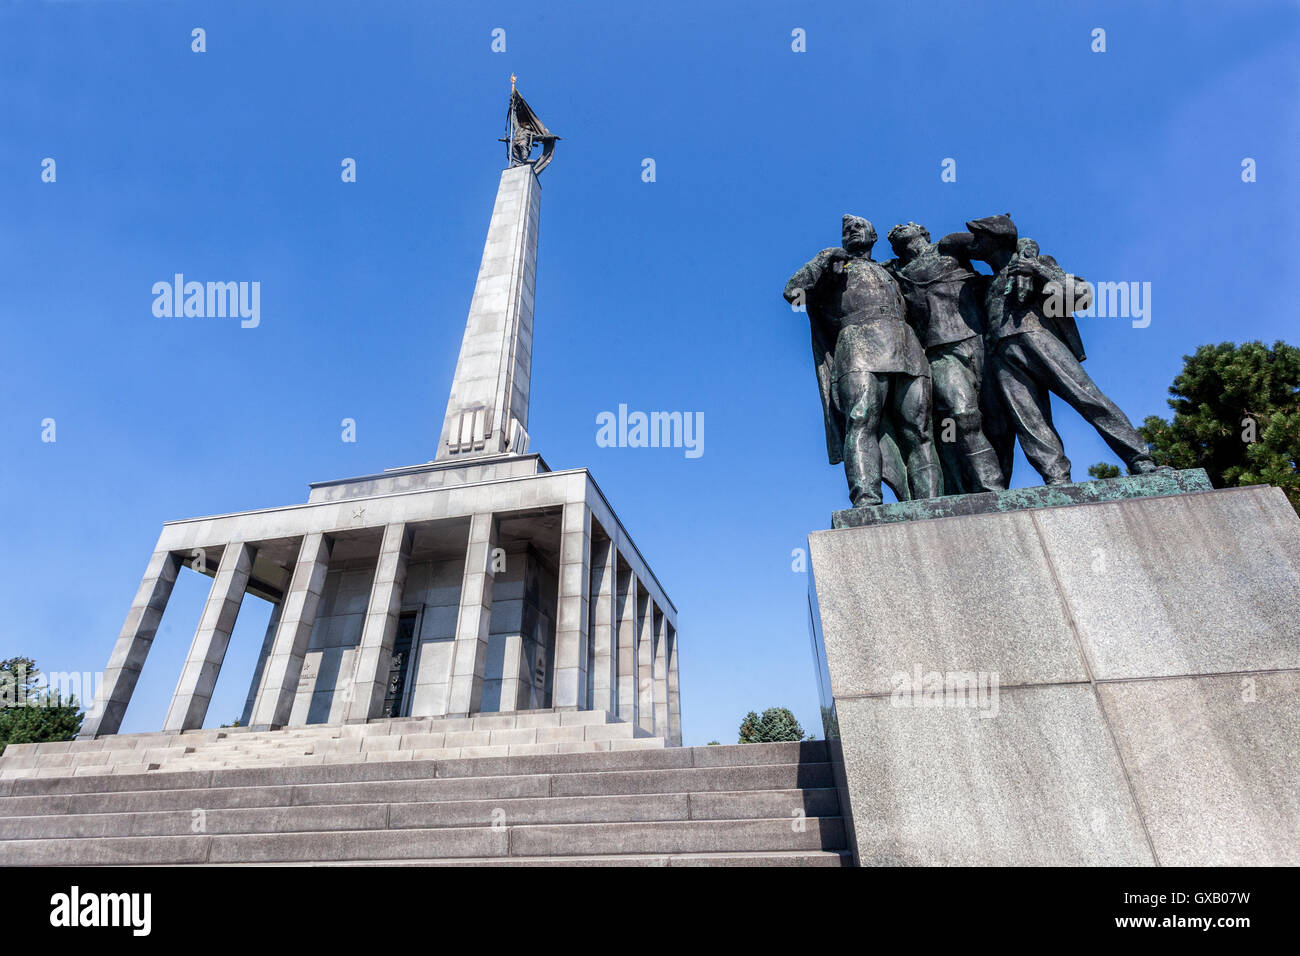 Hill Slavin, ein Denkmal für die sowjetischen Soldaten im Zweiten Weltkrieg während der Befreiung von Bratislava, Slavín Kriegerdenkmal, Slowakei, Europa getötet Stockfoto